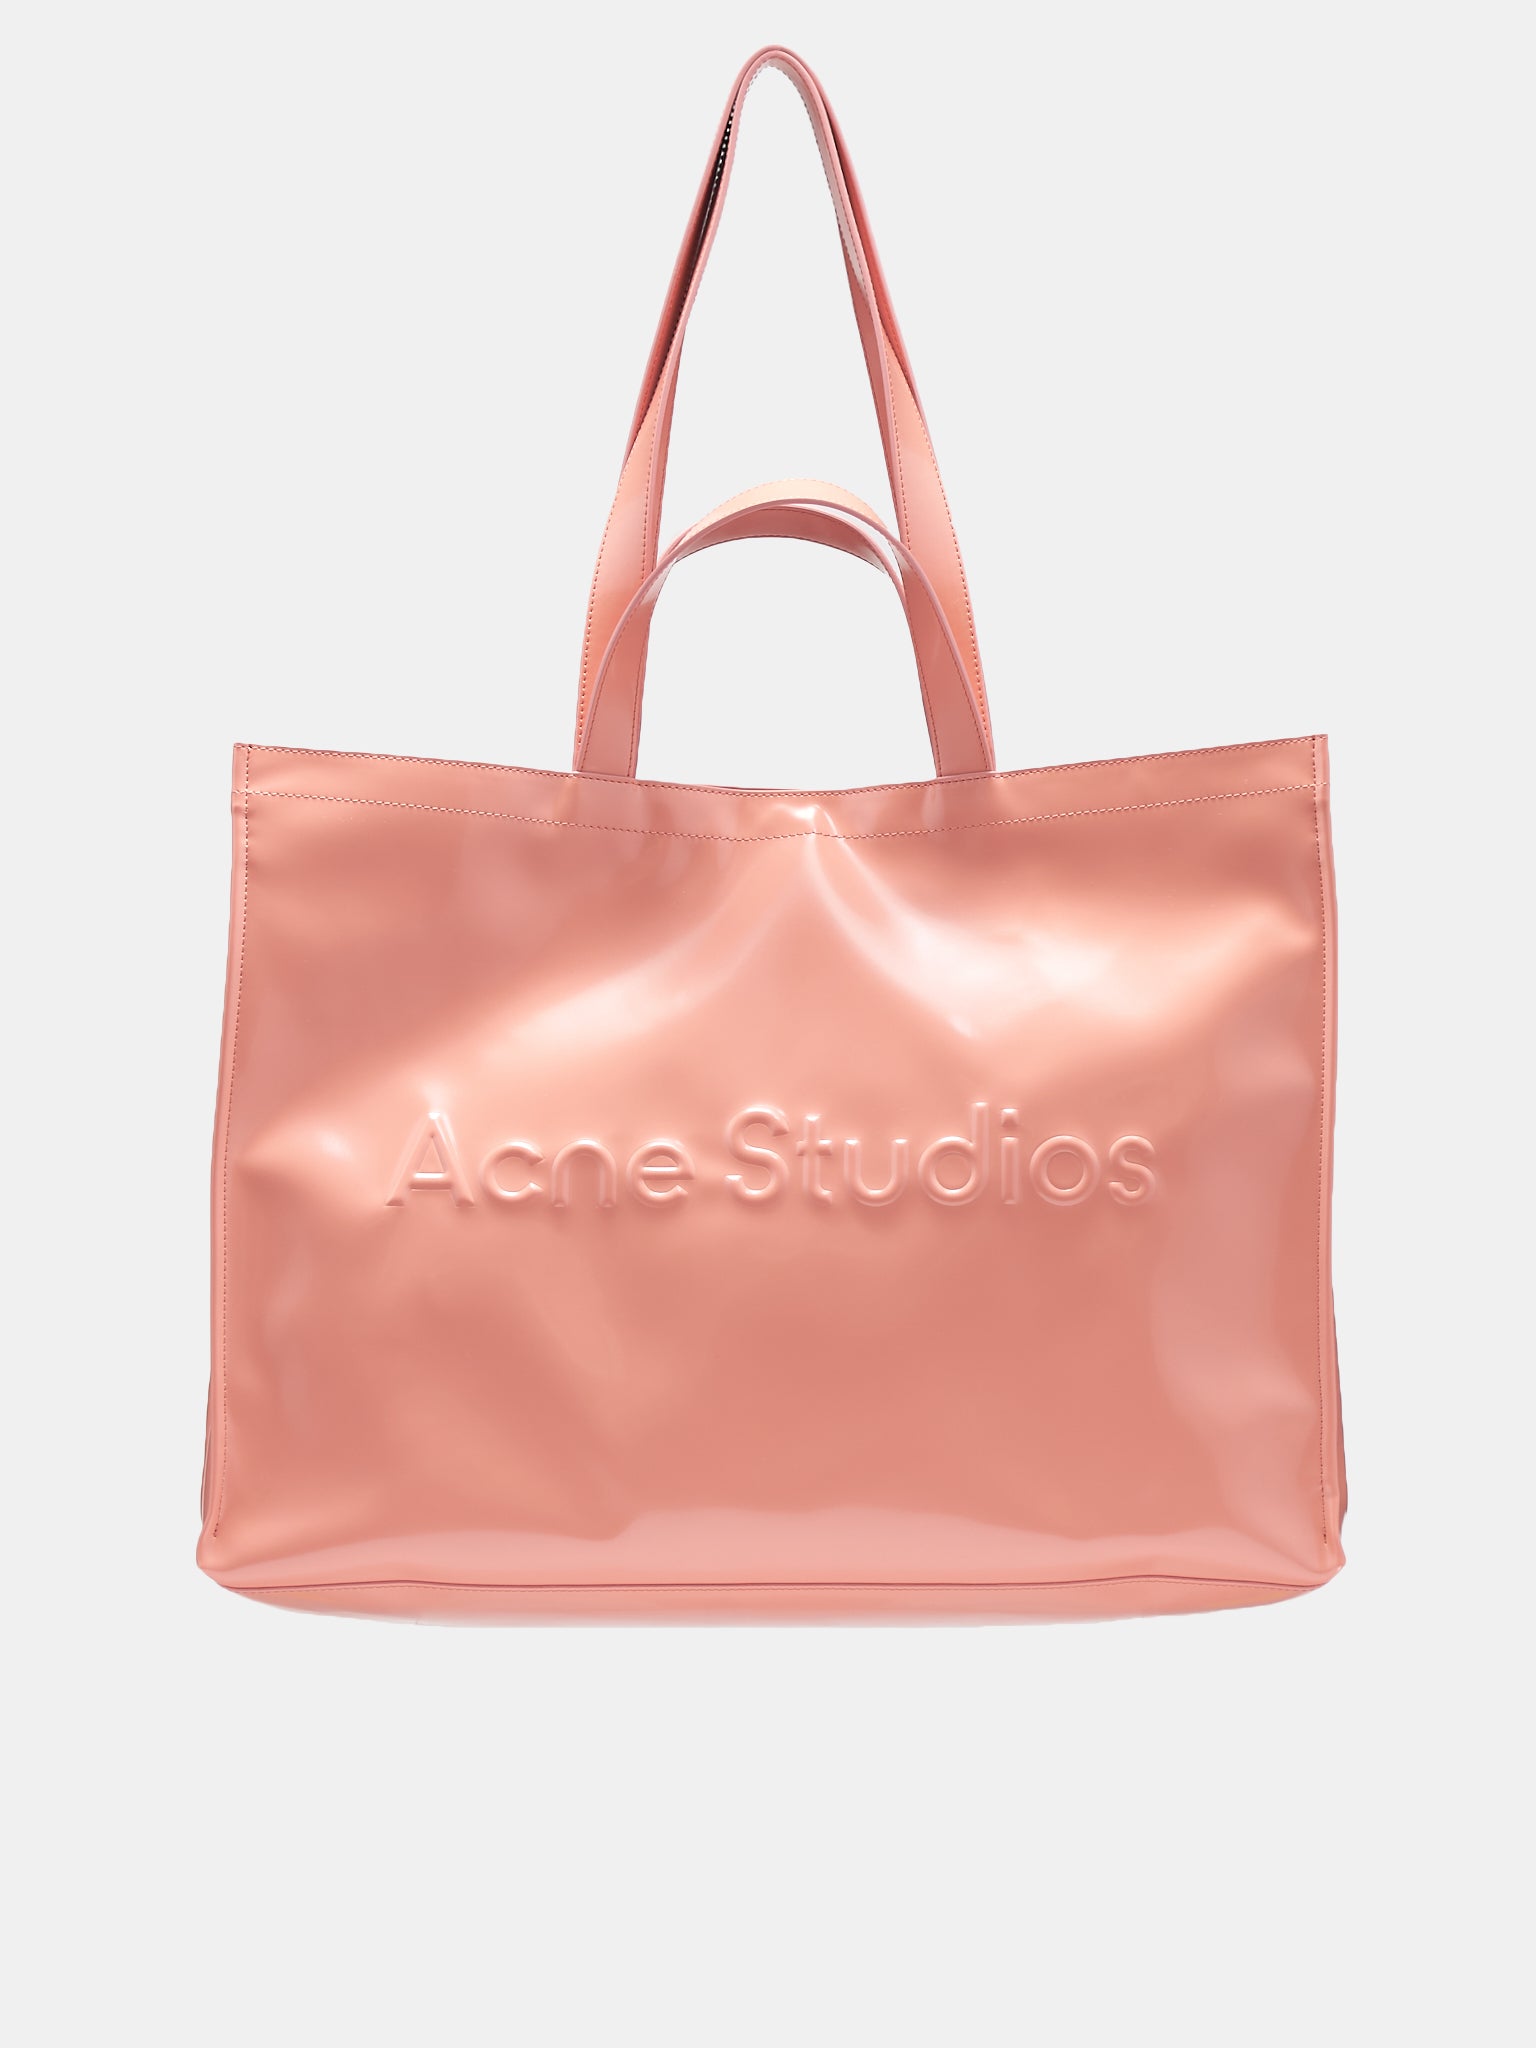 Transparent Inflatable Shoulder Bag by Acne Studios on Sale